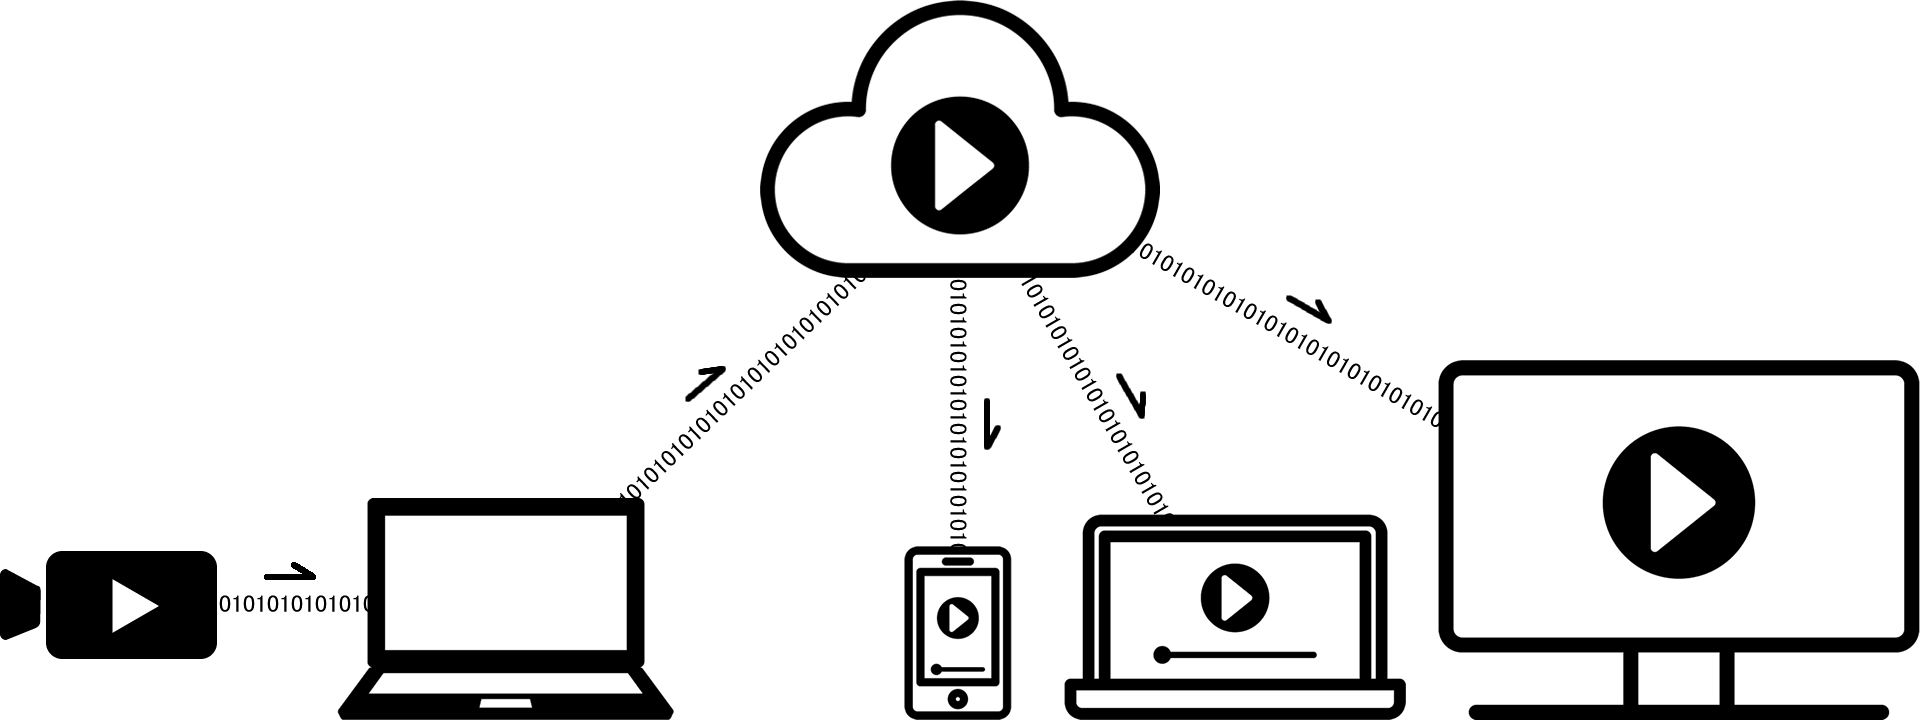 ライブ配信の仕組み。カメラで撮影した映像データはパソコンを通してYouTube等のSNSに送られ、スマホやパソコンでこのSNSにアクセスするとリアルタイムにこの動画を視聴することができます。